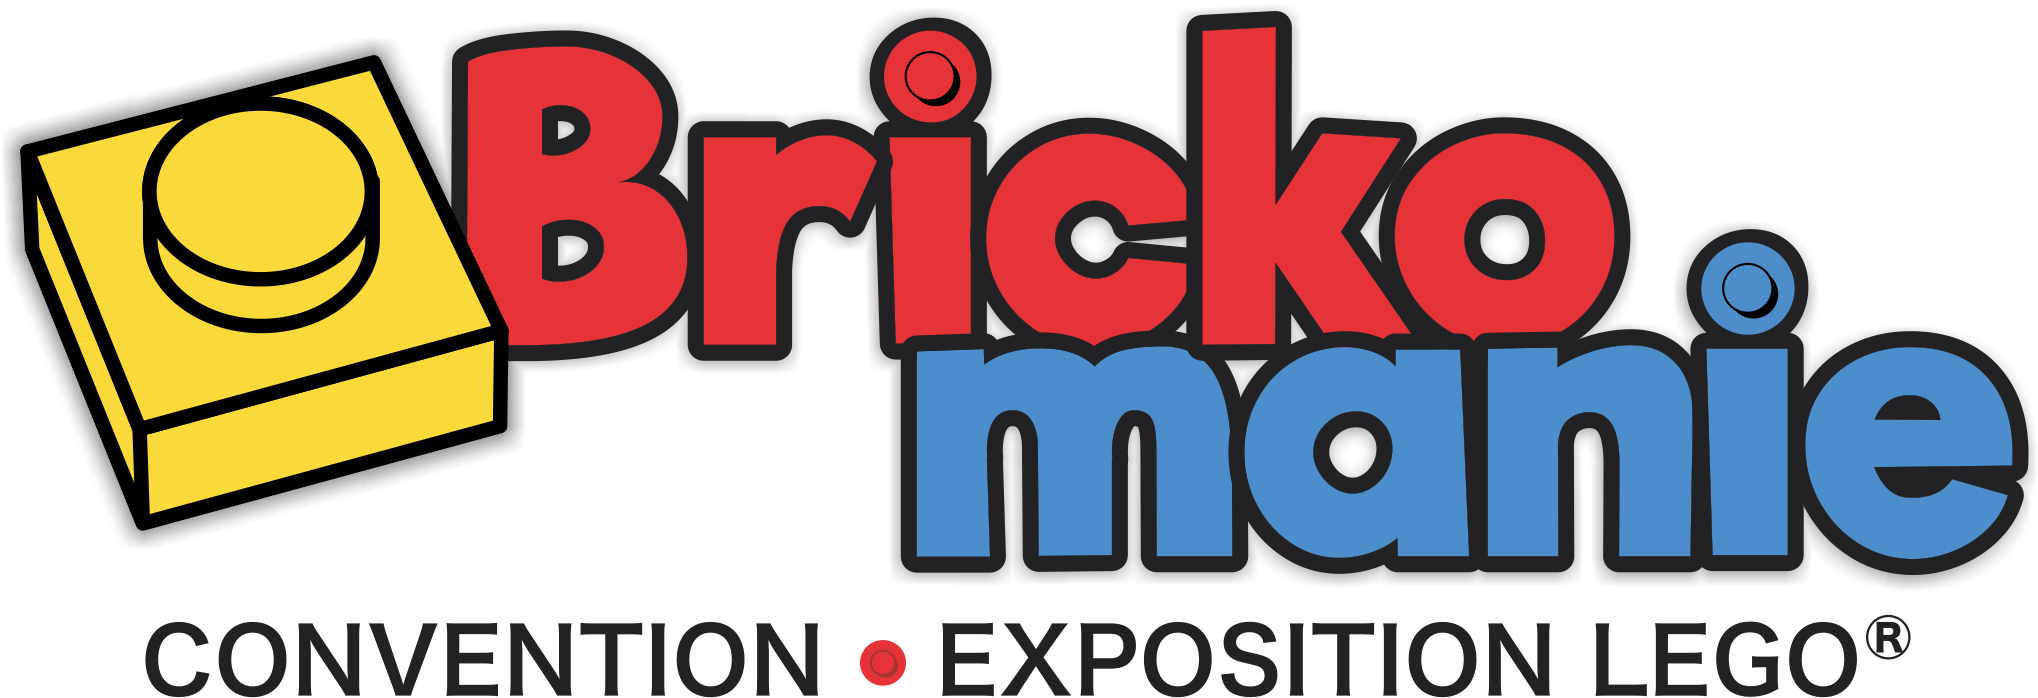 Brickomanie - Convention et exposition de briques LEGO